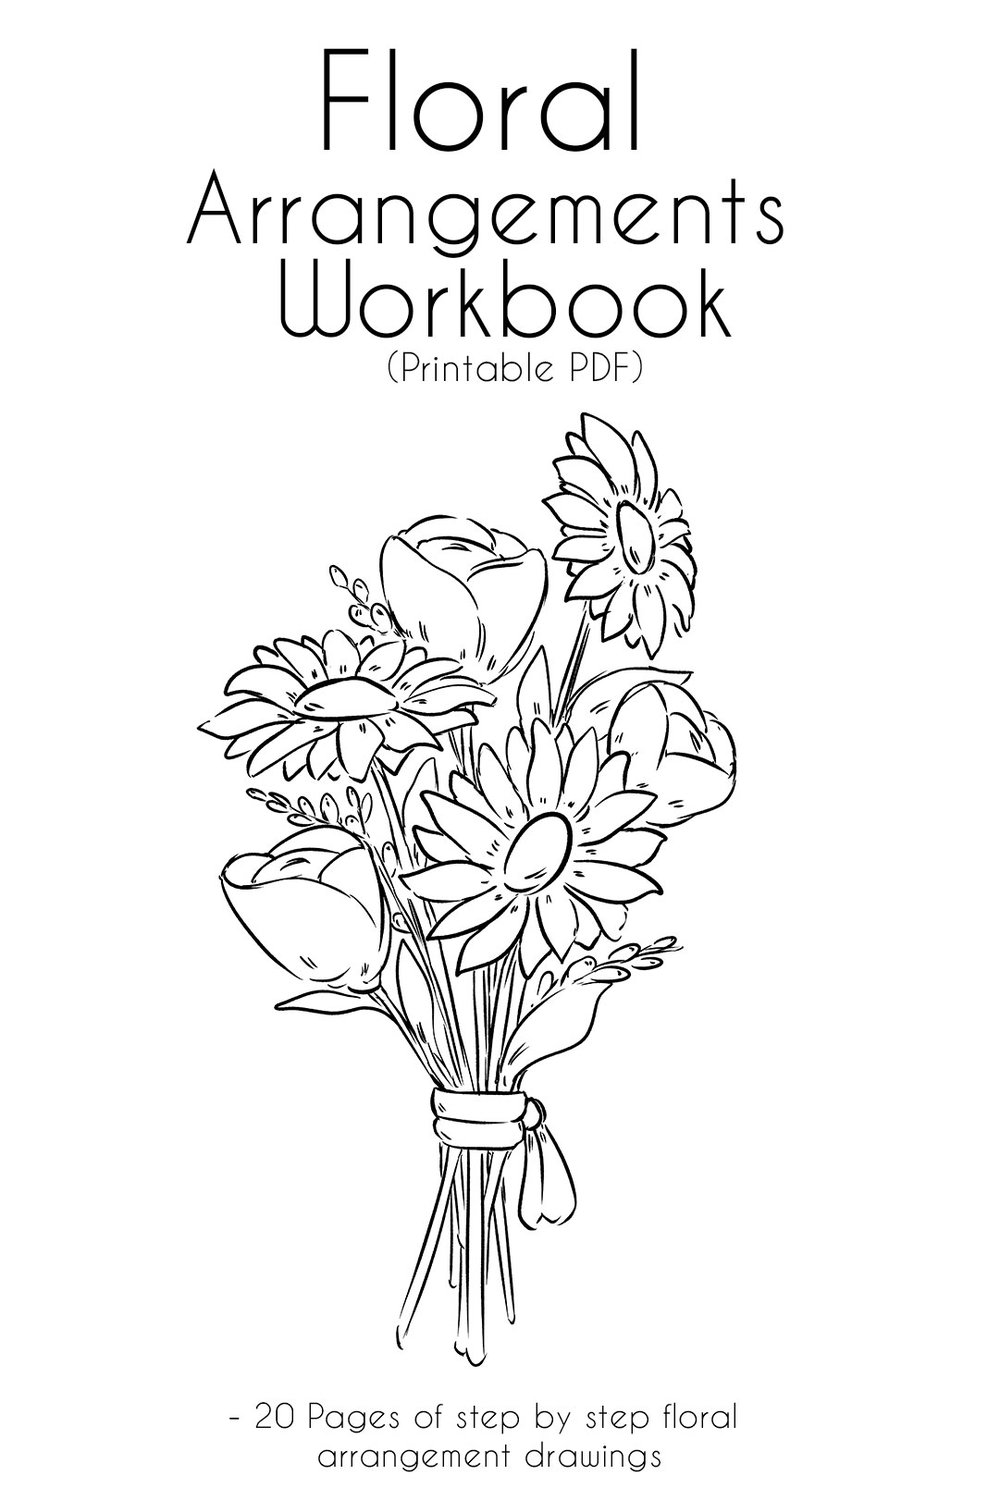 How to Draw Flowers : Step by Step Printable PDF Workbook - JeyRam ...